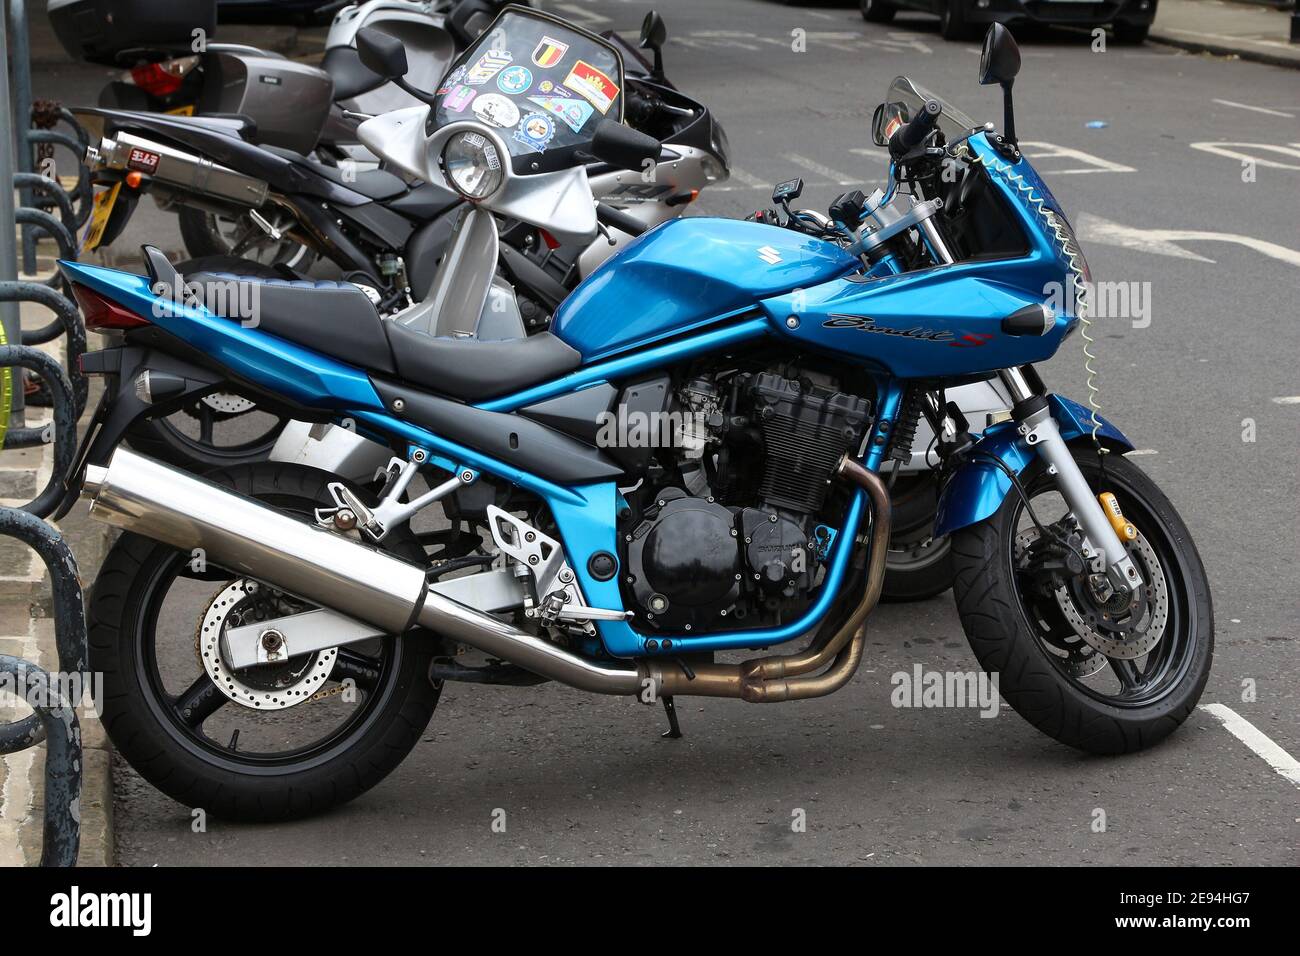 LEEDS, UK - 12 LUGLIO 2016: Blue Suzuki Bandit S (GSF1200) moto sportiva parcheggiata a Leeds. È una moto a quattro cilindri. Foto Stock